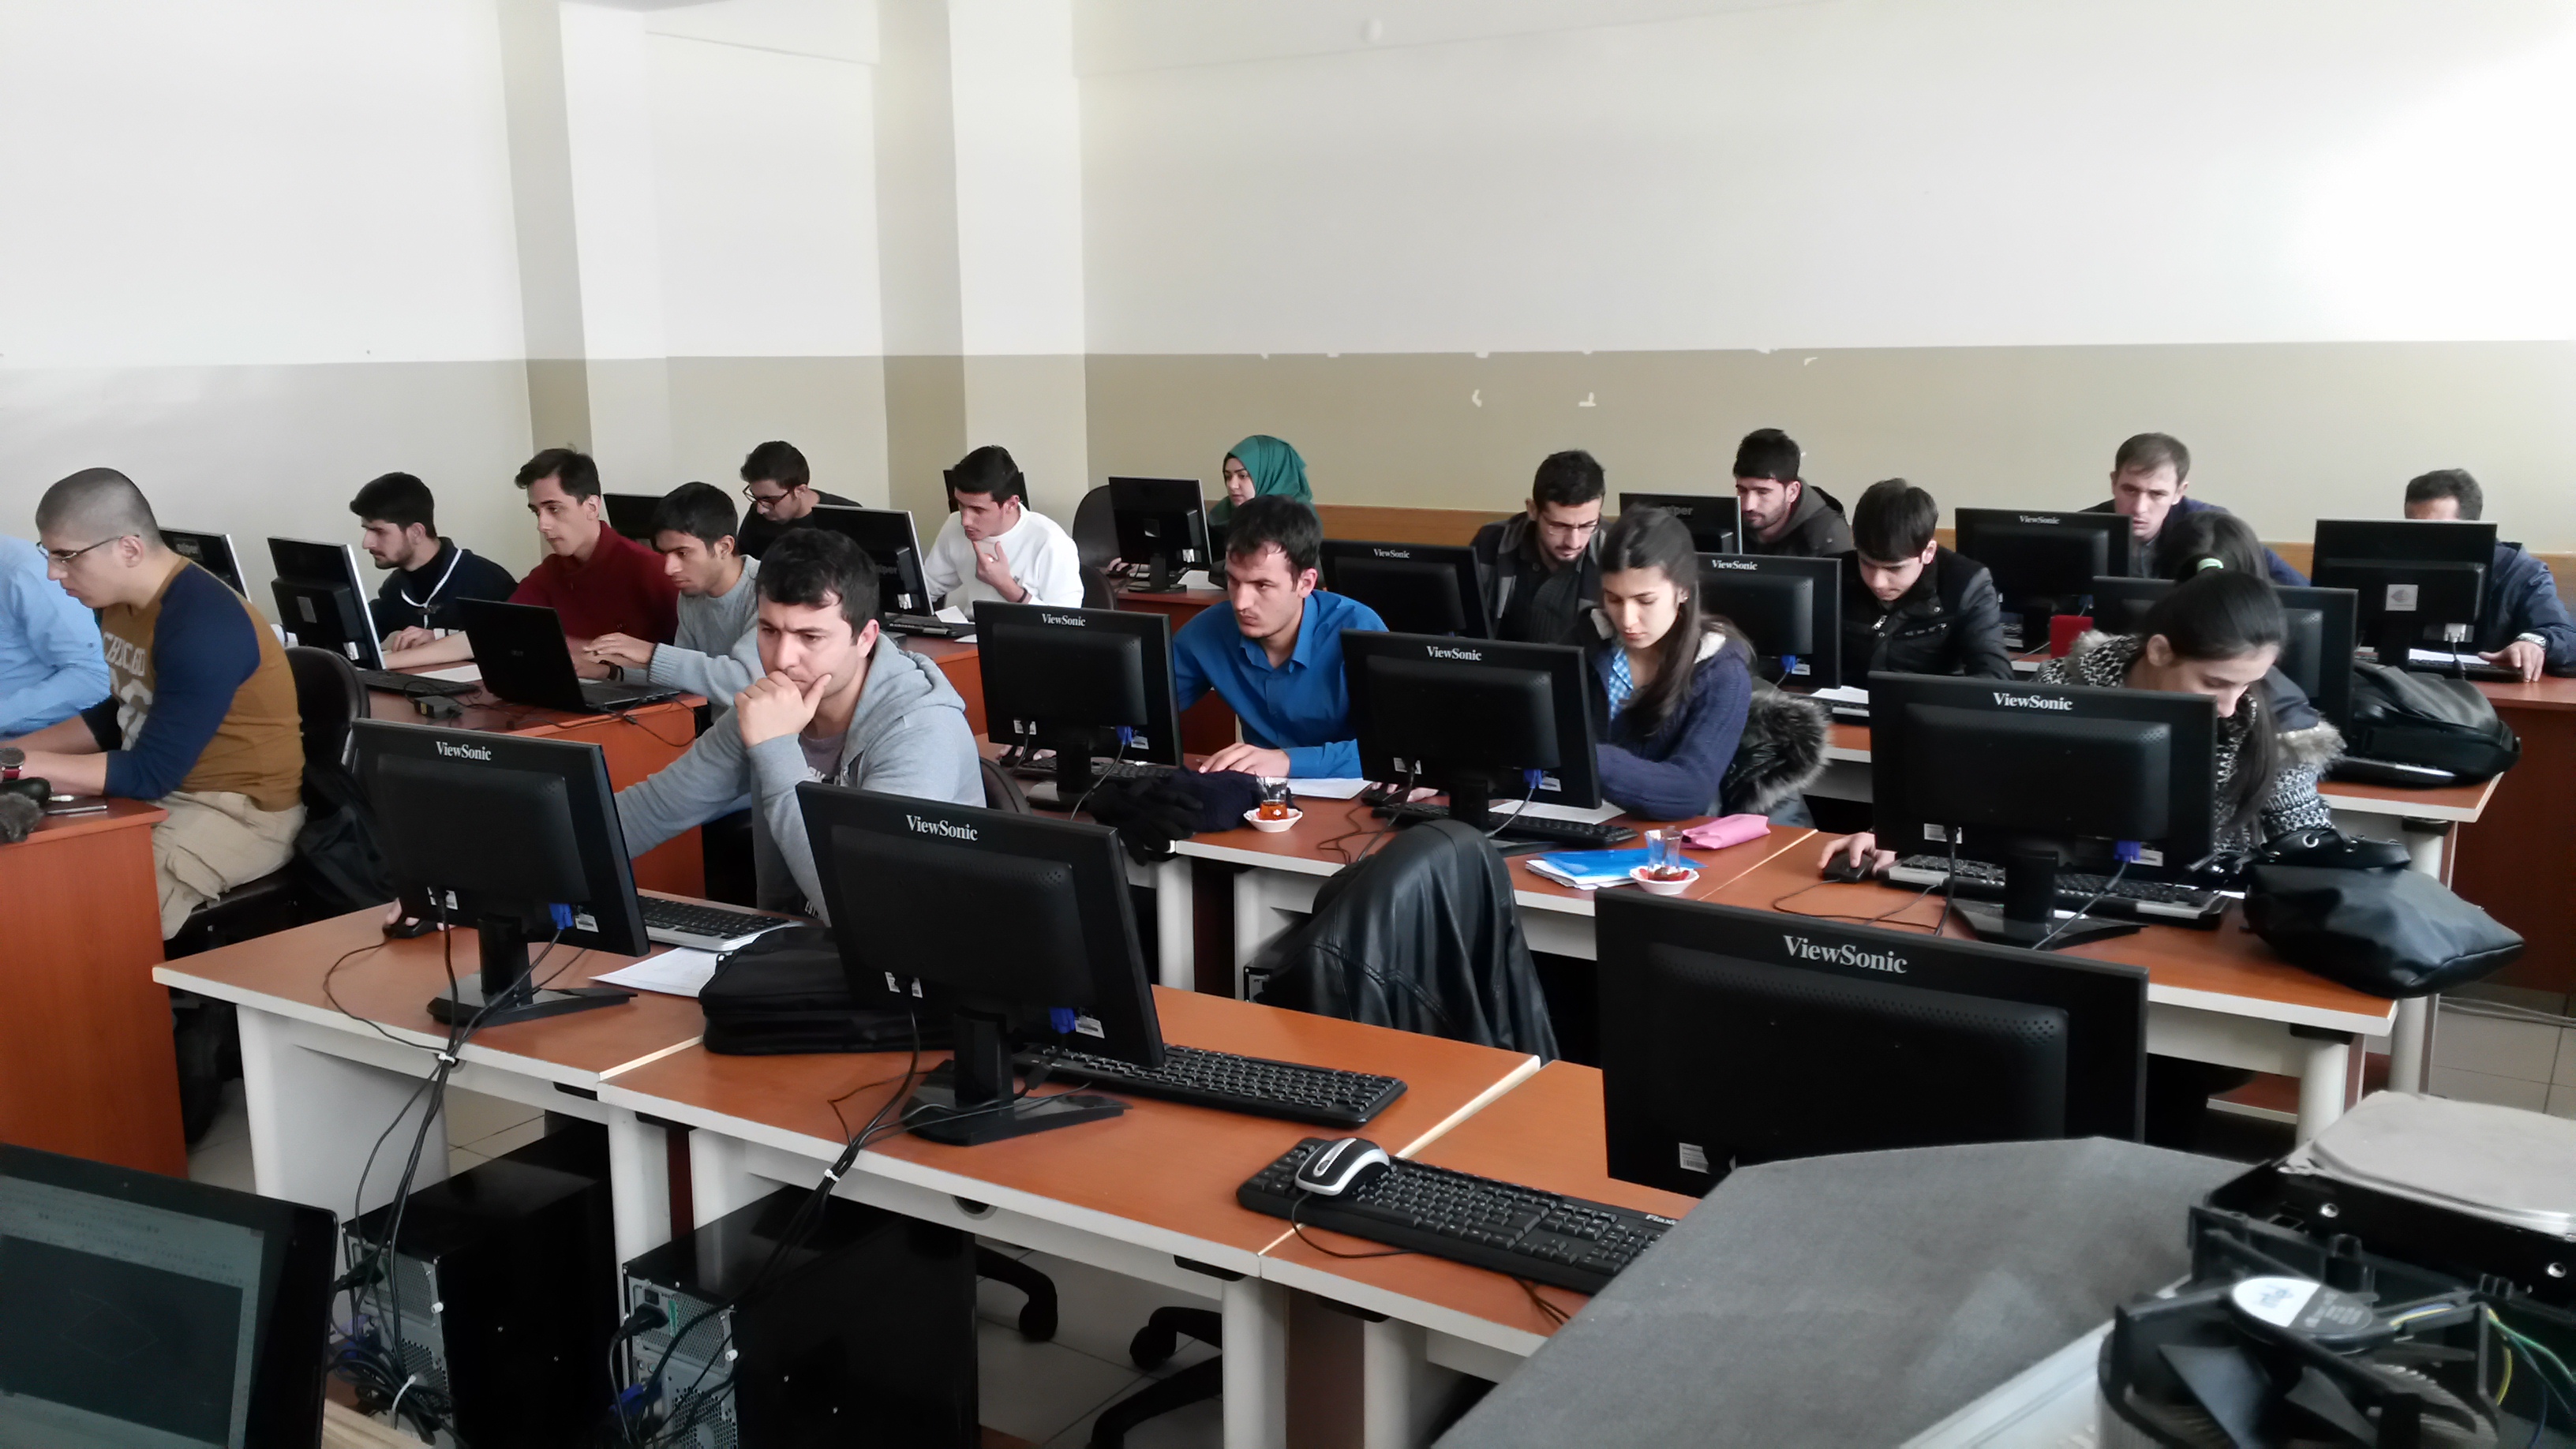 Bitlis Mesleki Eğitim Merkezinde açılan iki boyutlu çizim (AUTOCAD) kursuna Bitlis Eren Üniversitesi öğrencilerinden büyük bir ilgi ve katılım var.